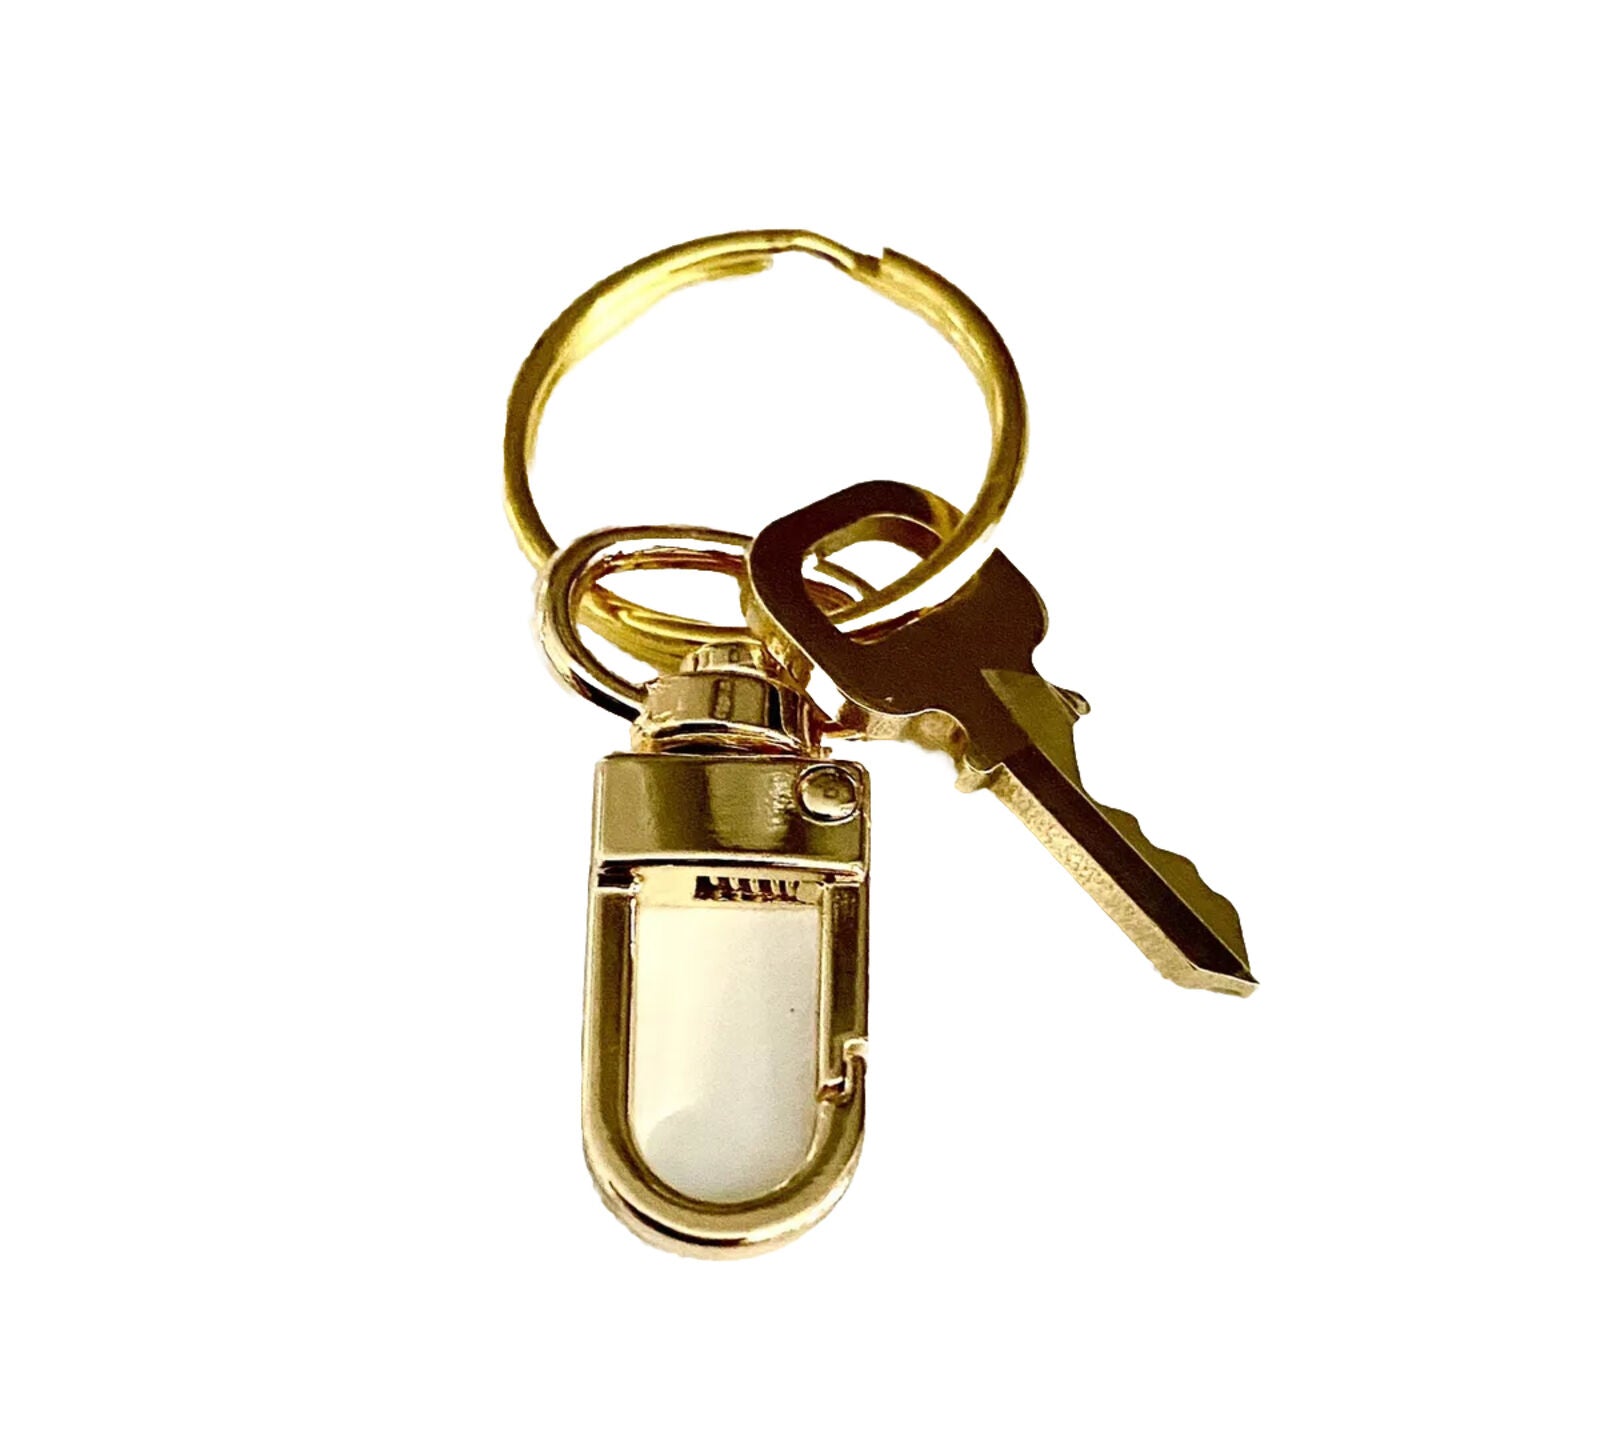 1 Pc Louis Vuitton Key 305 Brass Goldtone w/ Generic Swivel Clasp GENUINE!